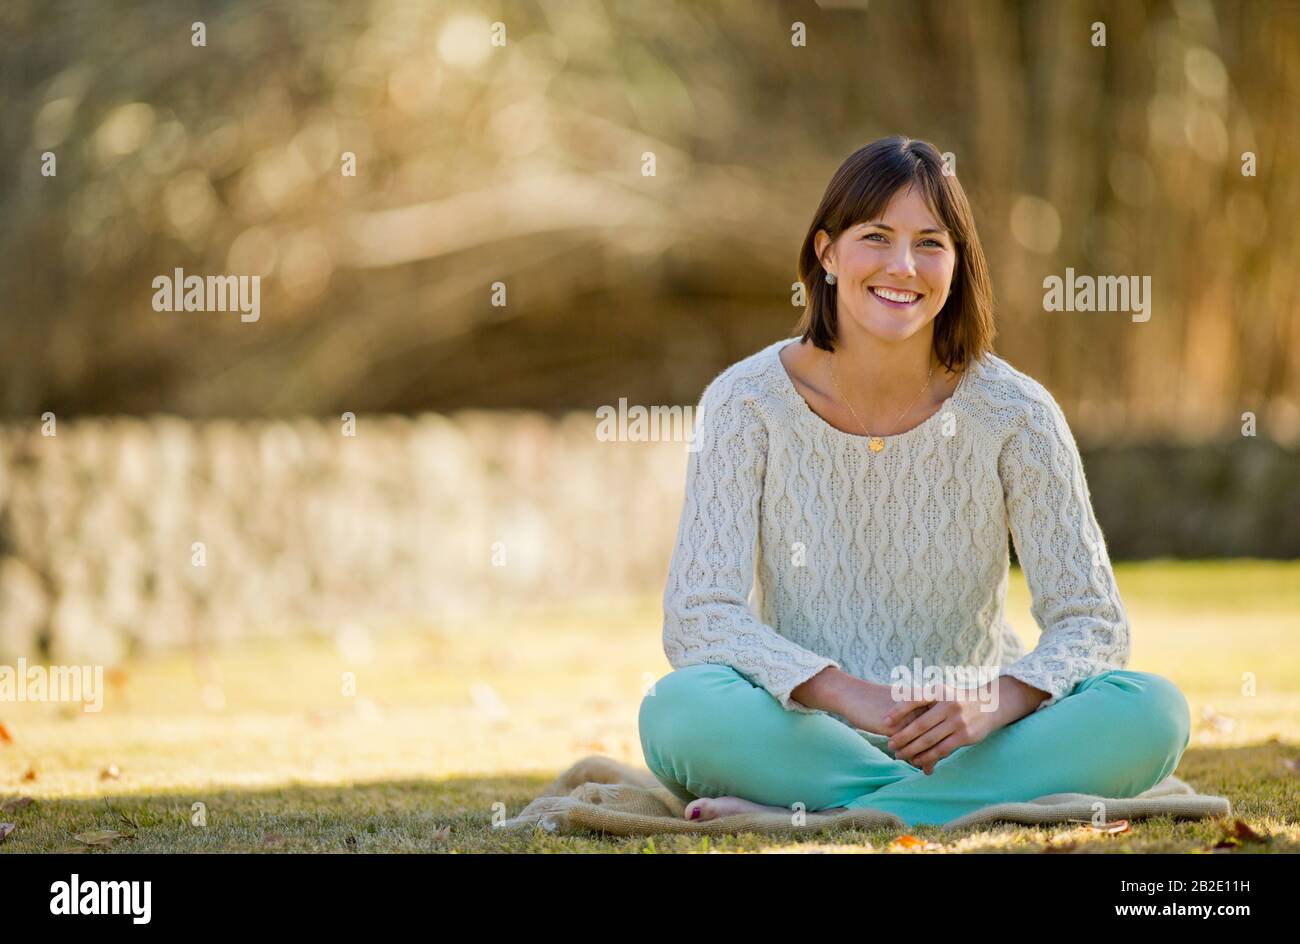 Portrait d'une jeune femme souriante se reposant sur une couverture dans un parc ensoleillé Banque D'Images